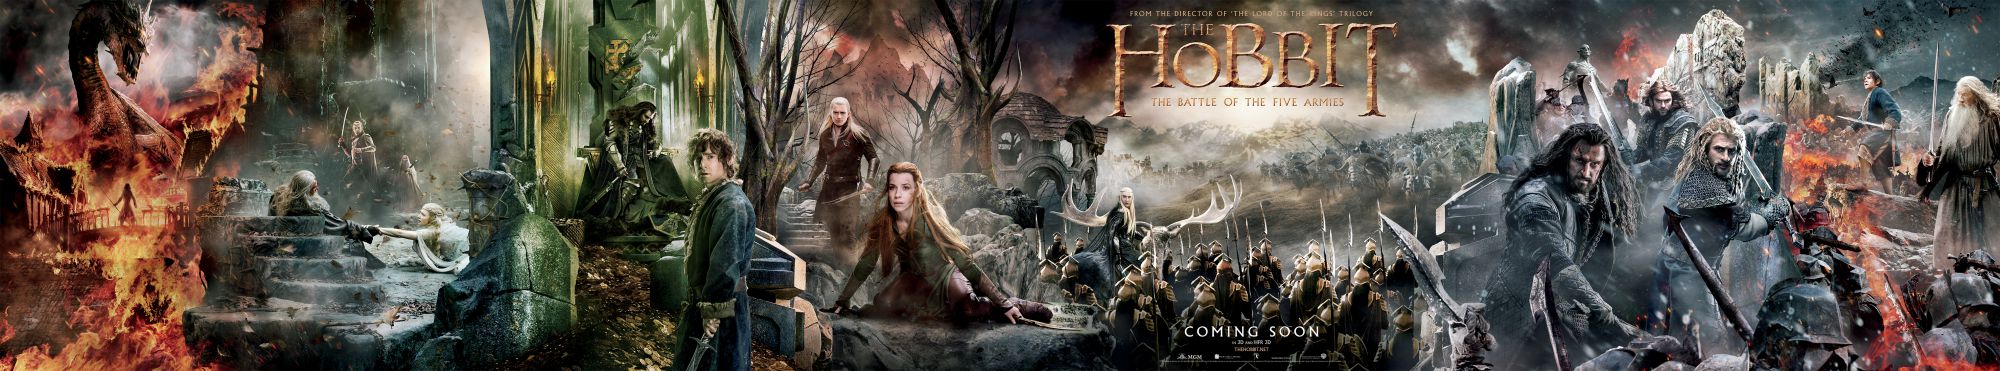 The Hobbit Battle of Five Armies